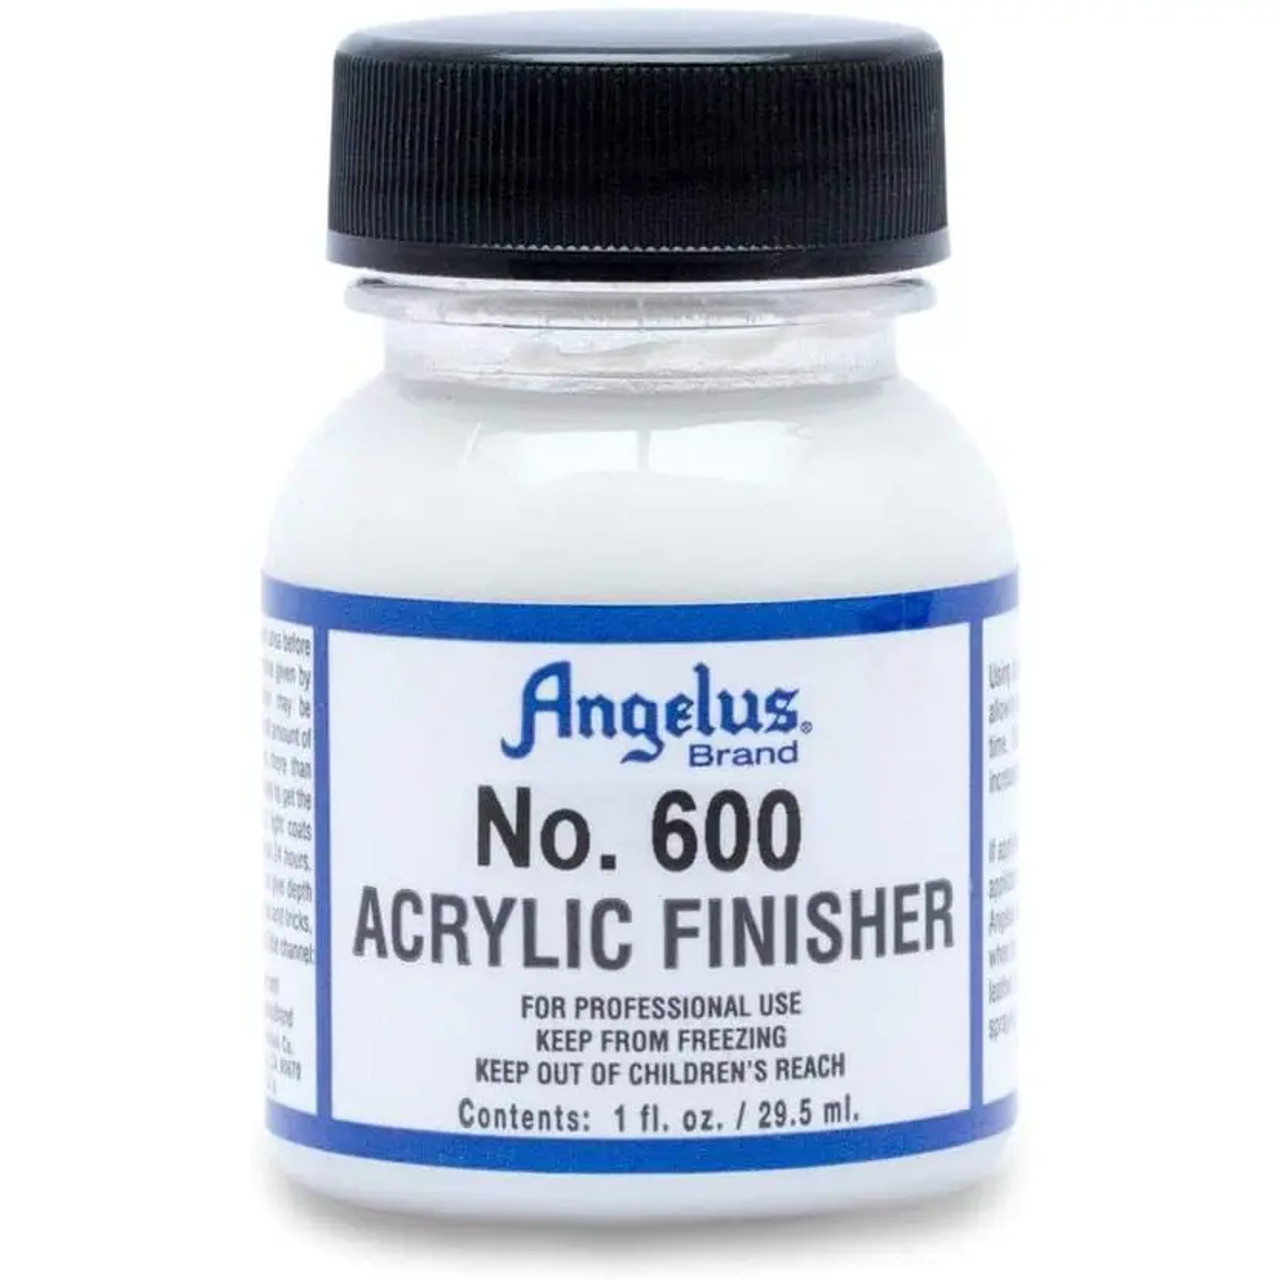 Angelus Paint Acrylic Leather Finish Finisher Satin Semi Gloss High Gloss  Matte